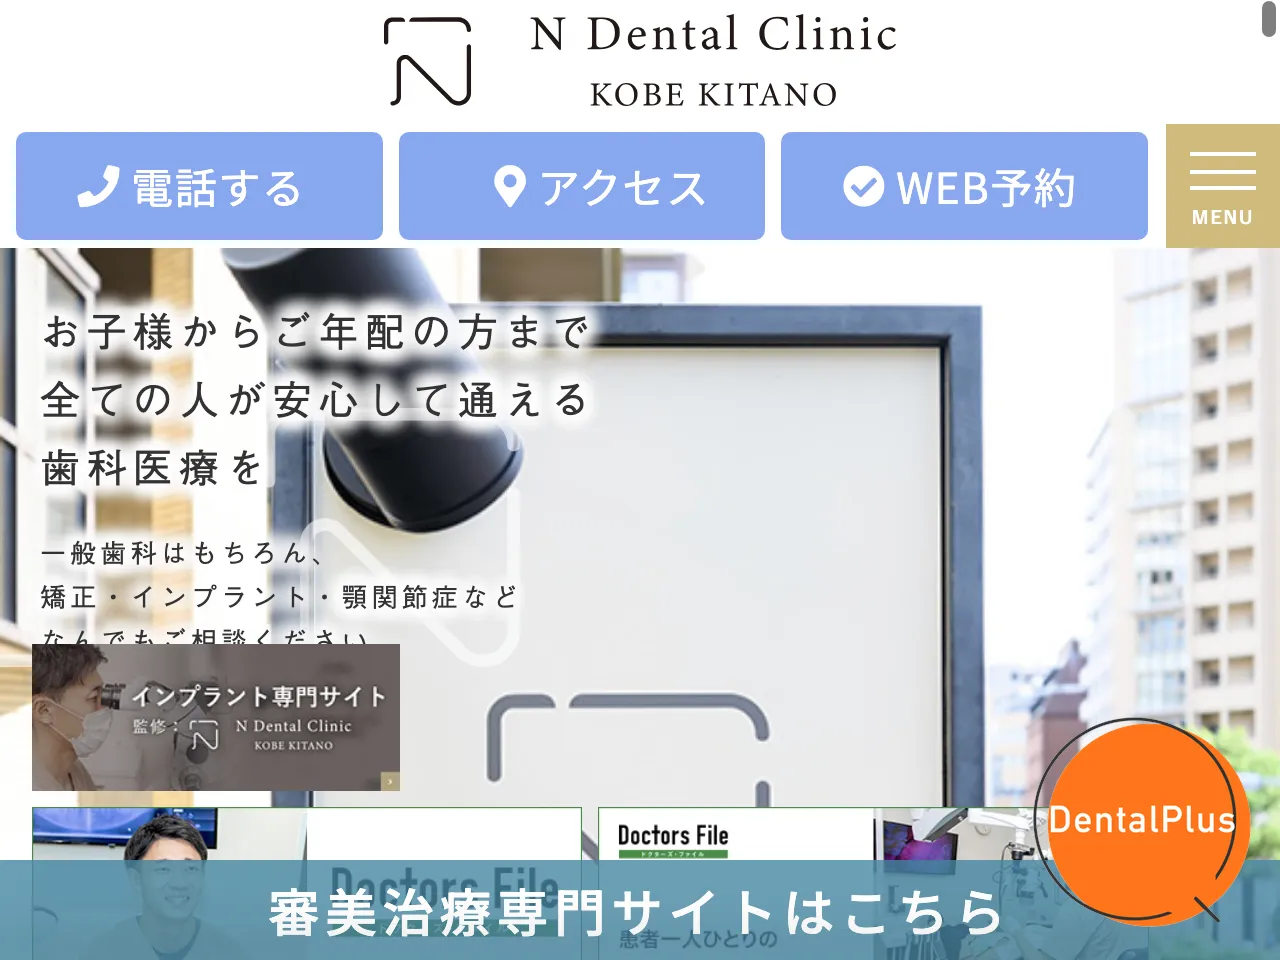 神戸北野Nデンタルクリニックのウェブサイト